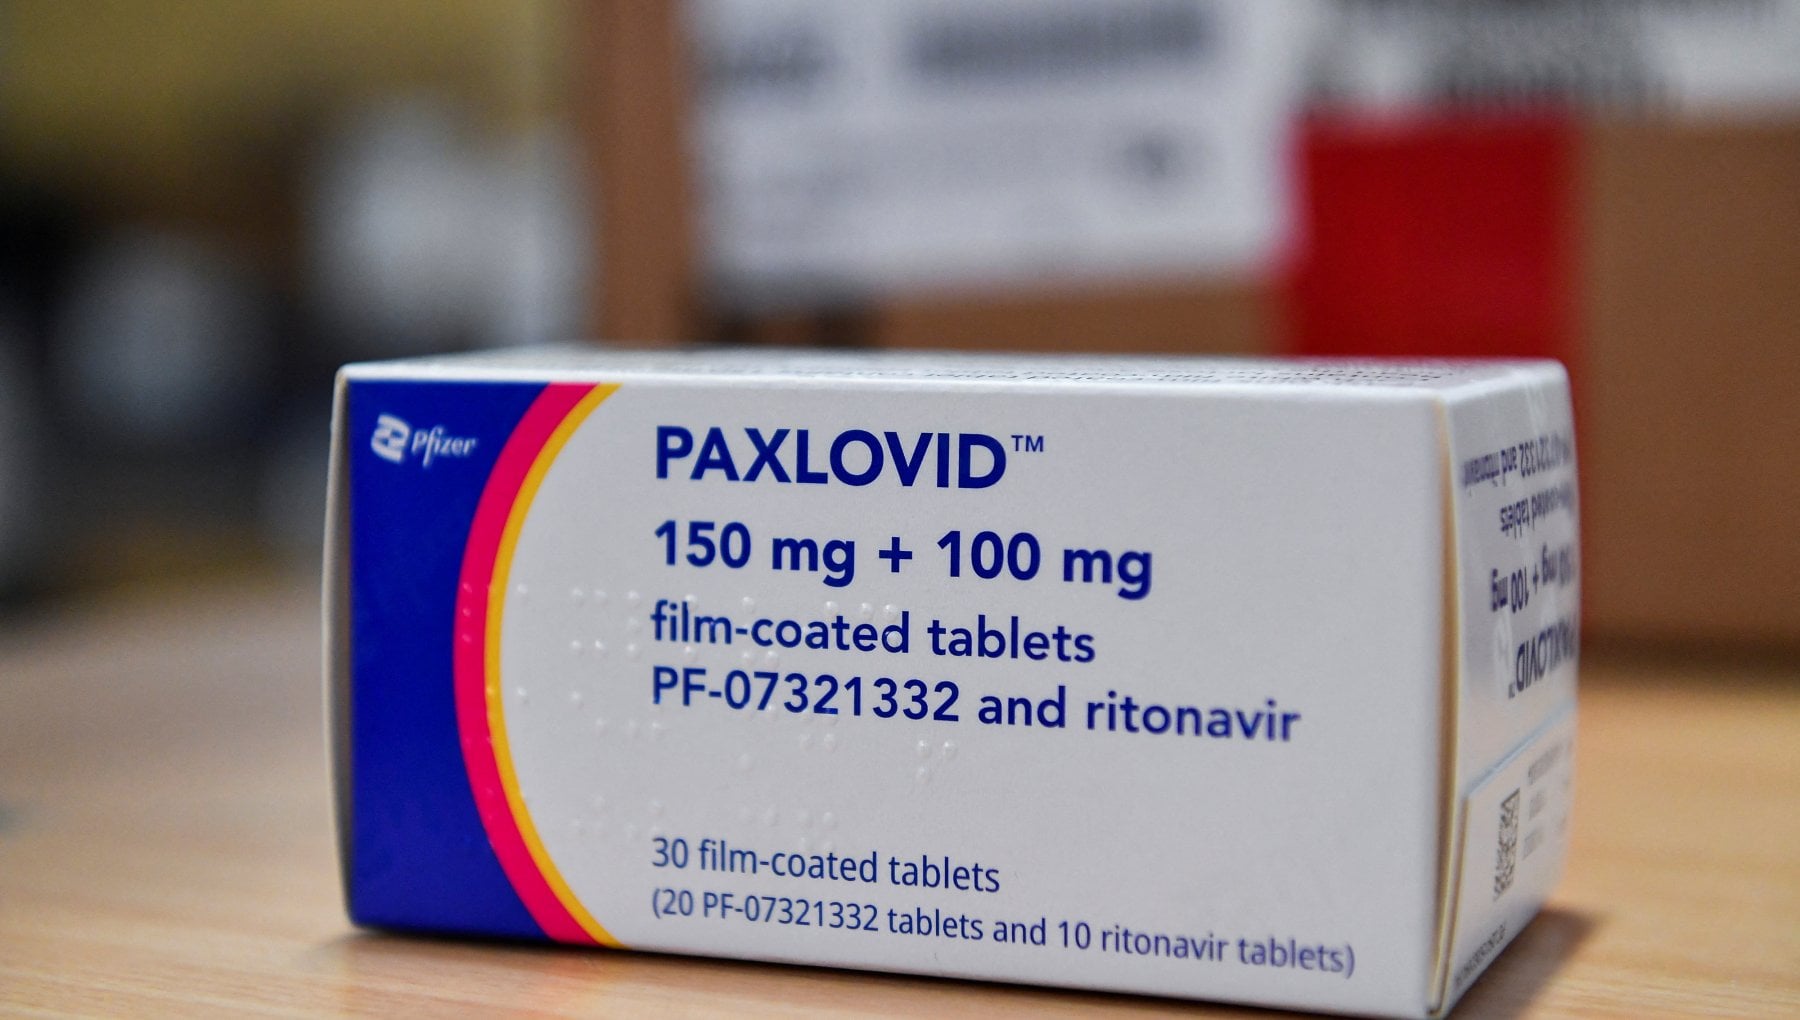 Paxlovid, breve storia di un farmaco contro il Covid-19